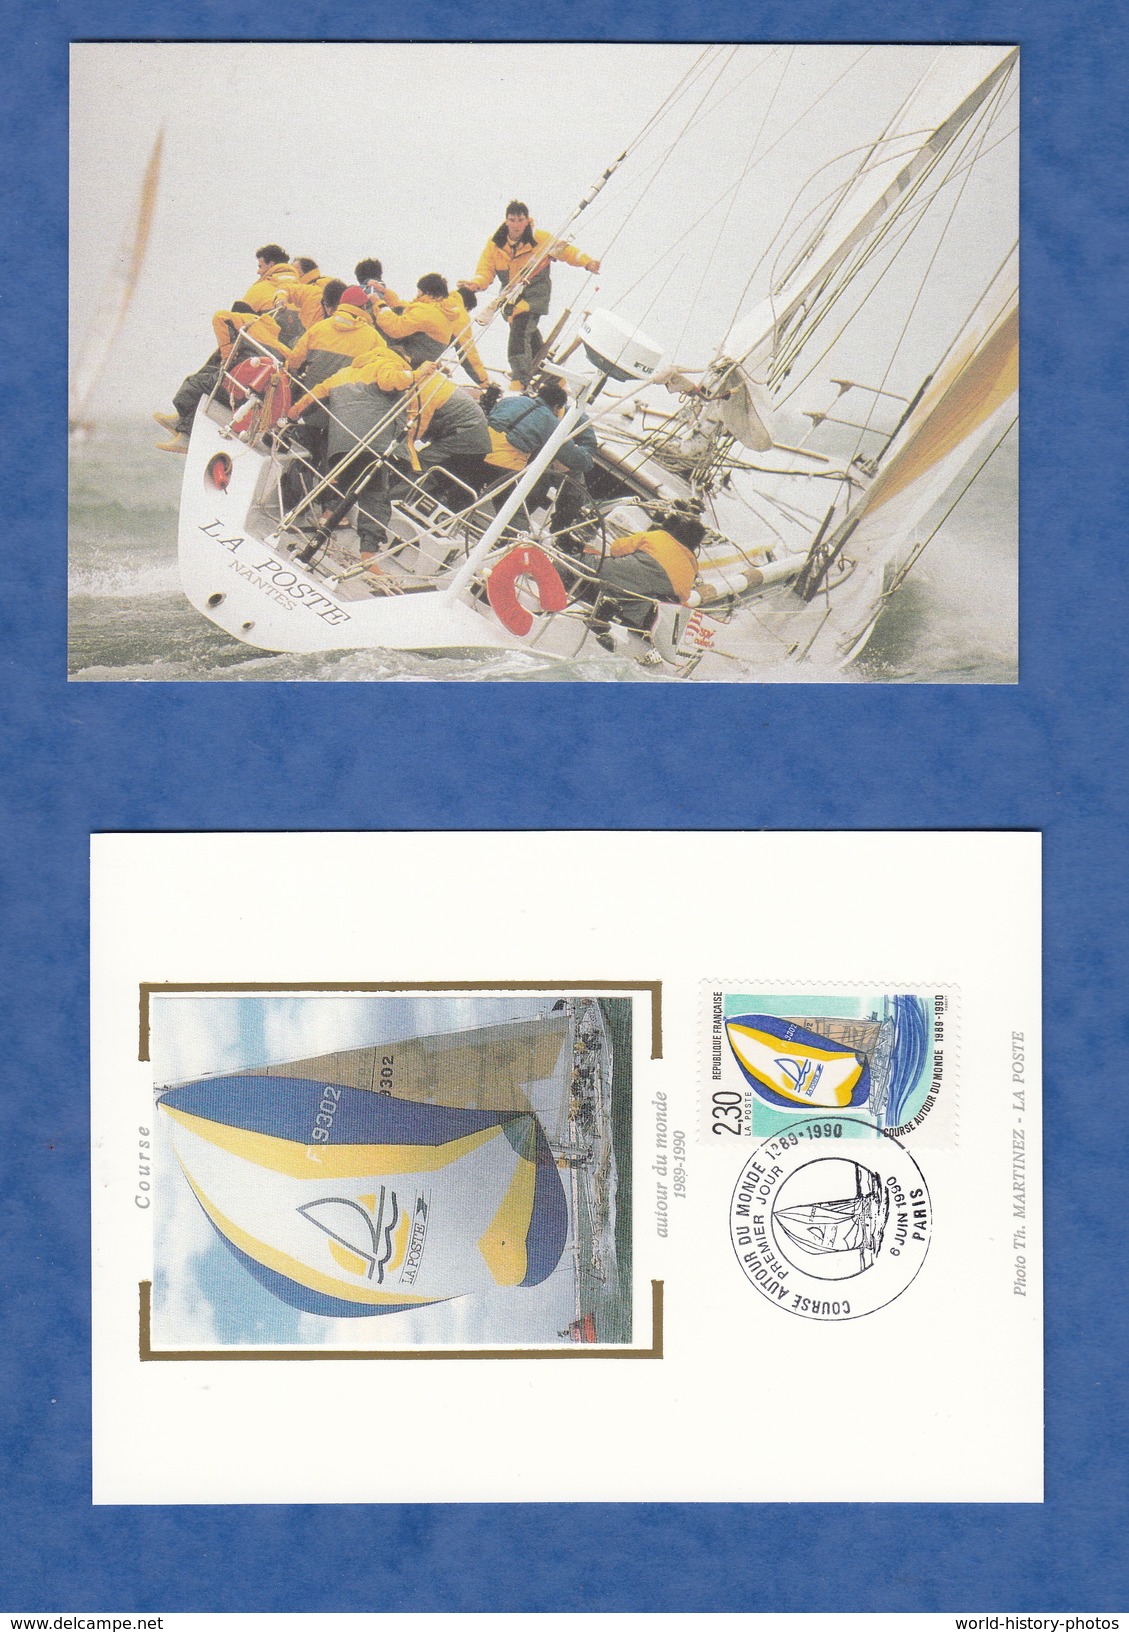 Livret Premier Jour + 2 Cartes Postales - SOUTHAMPTON - Bateau LA POSTE First 51 Bénéteau - 1990 - Whitebread D. Malle - Autres & Non Classés